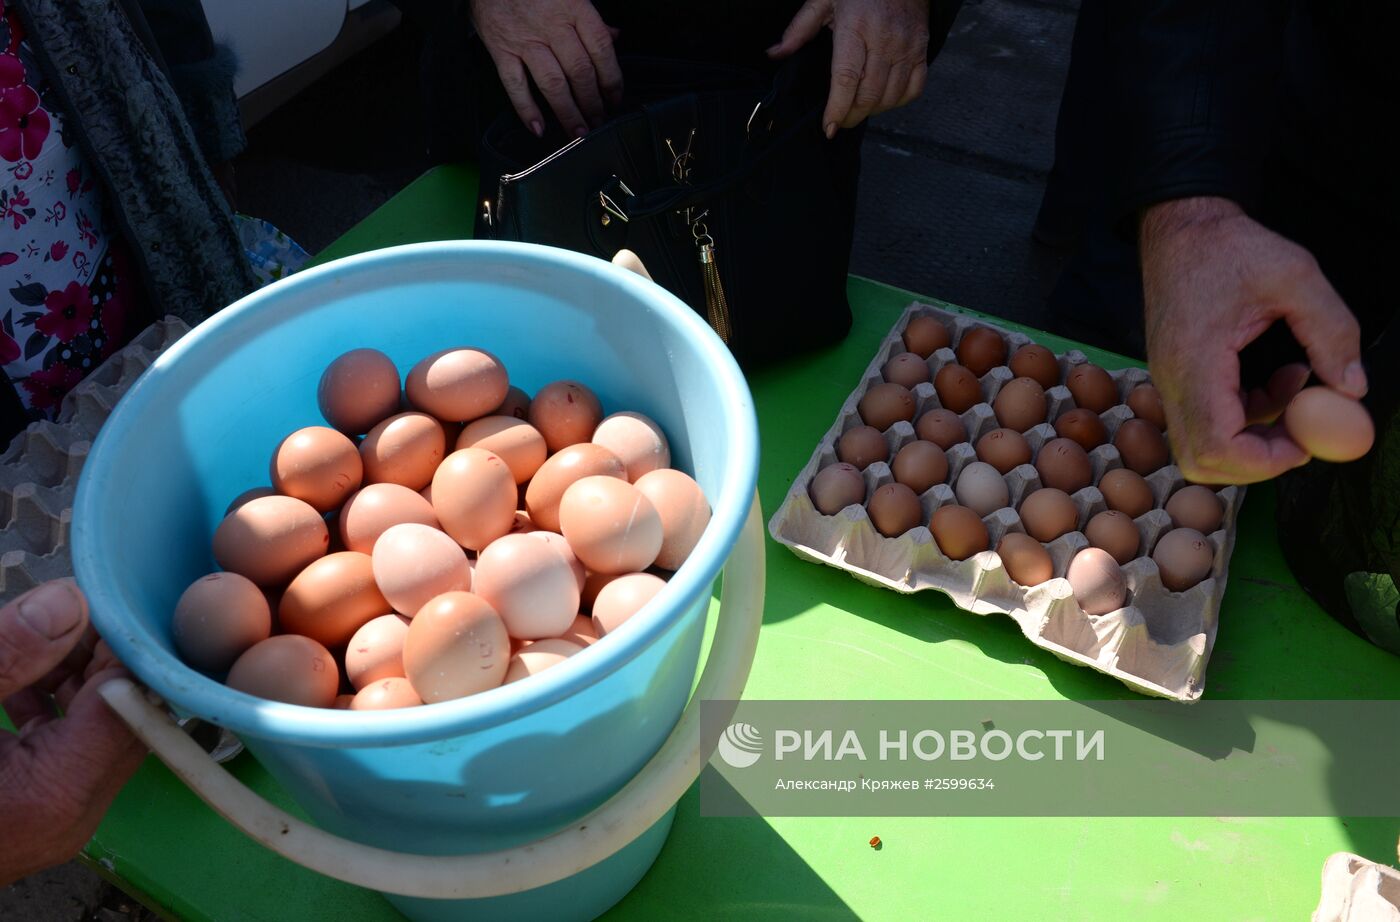 Продовольственная ярмарка в Новосибирске